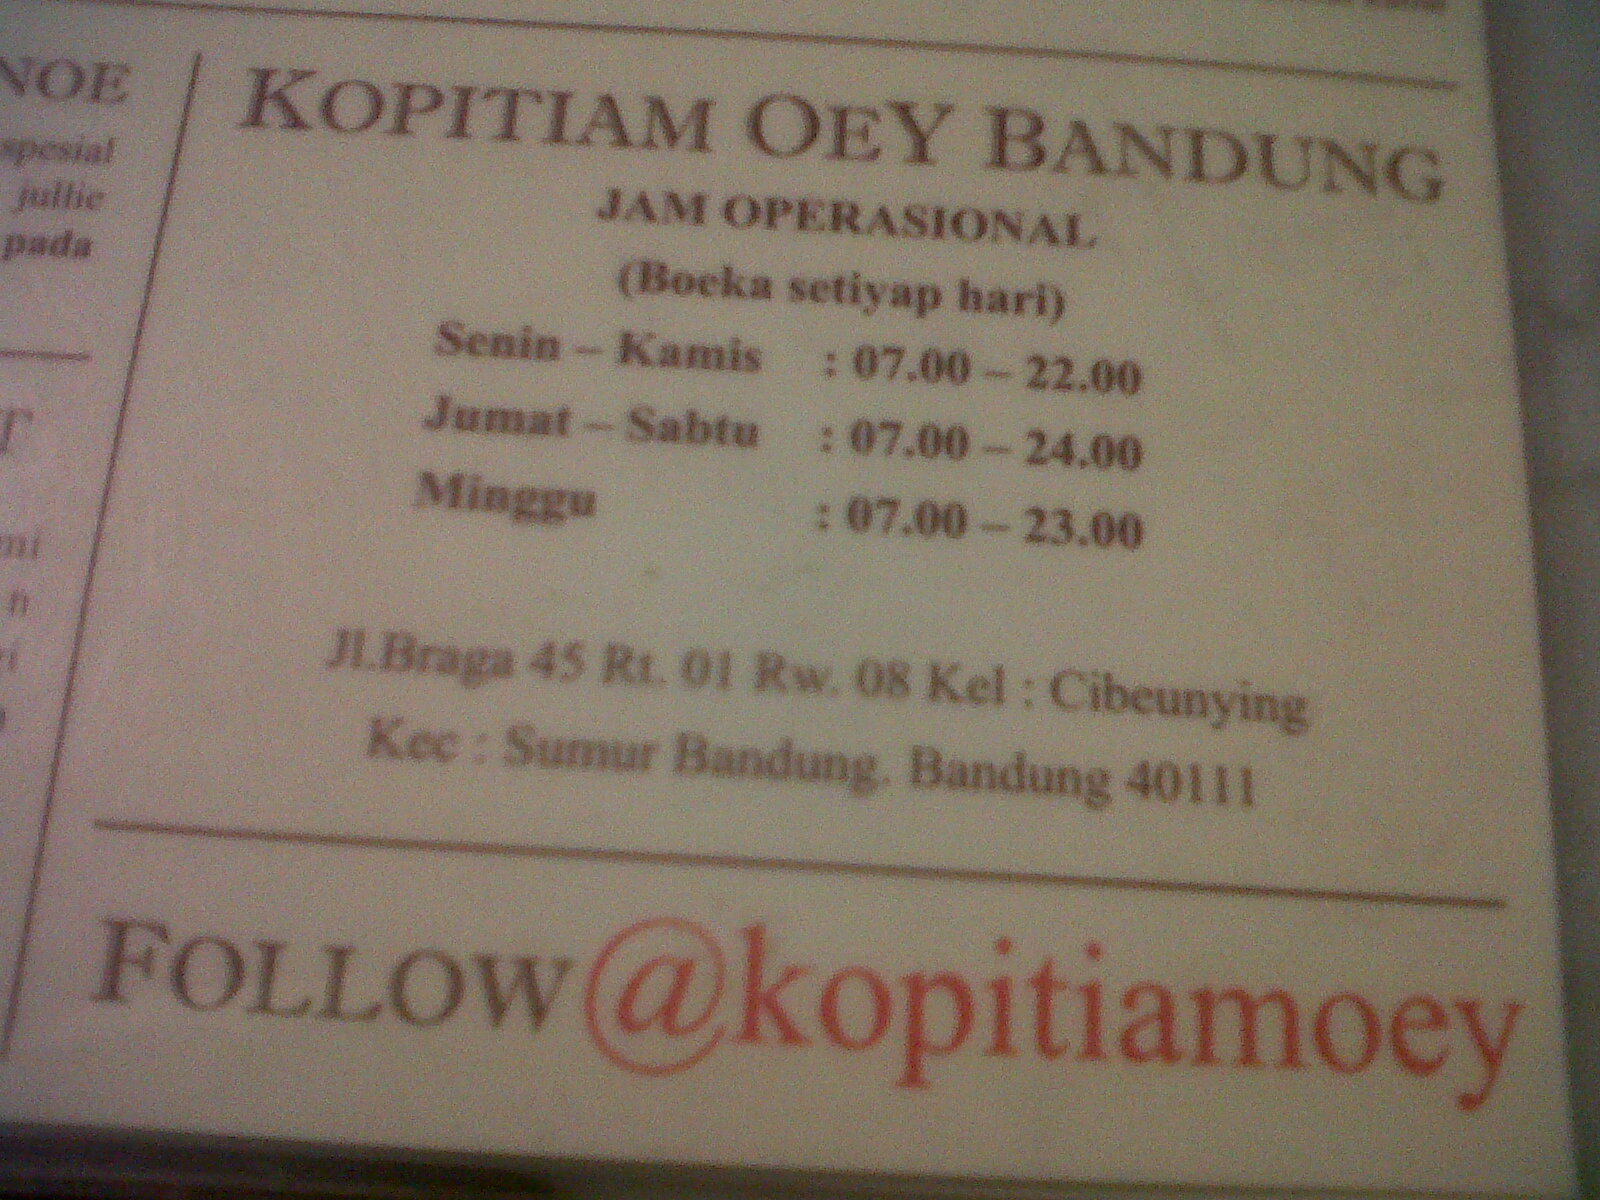 Kopitiam Oey Bandung